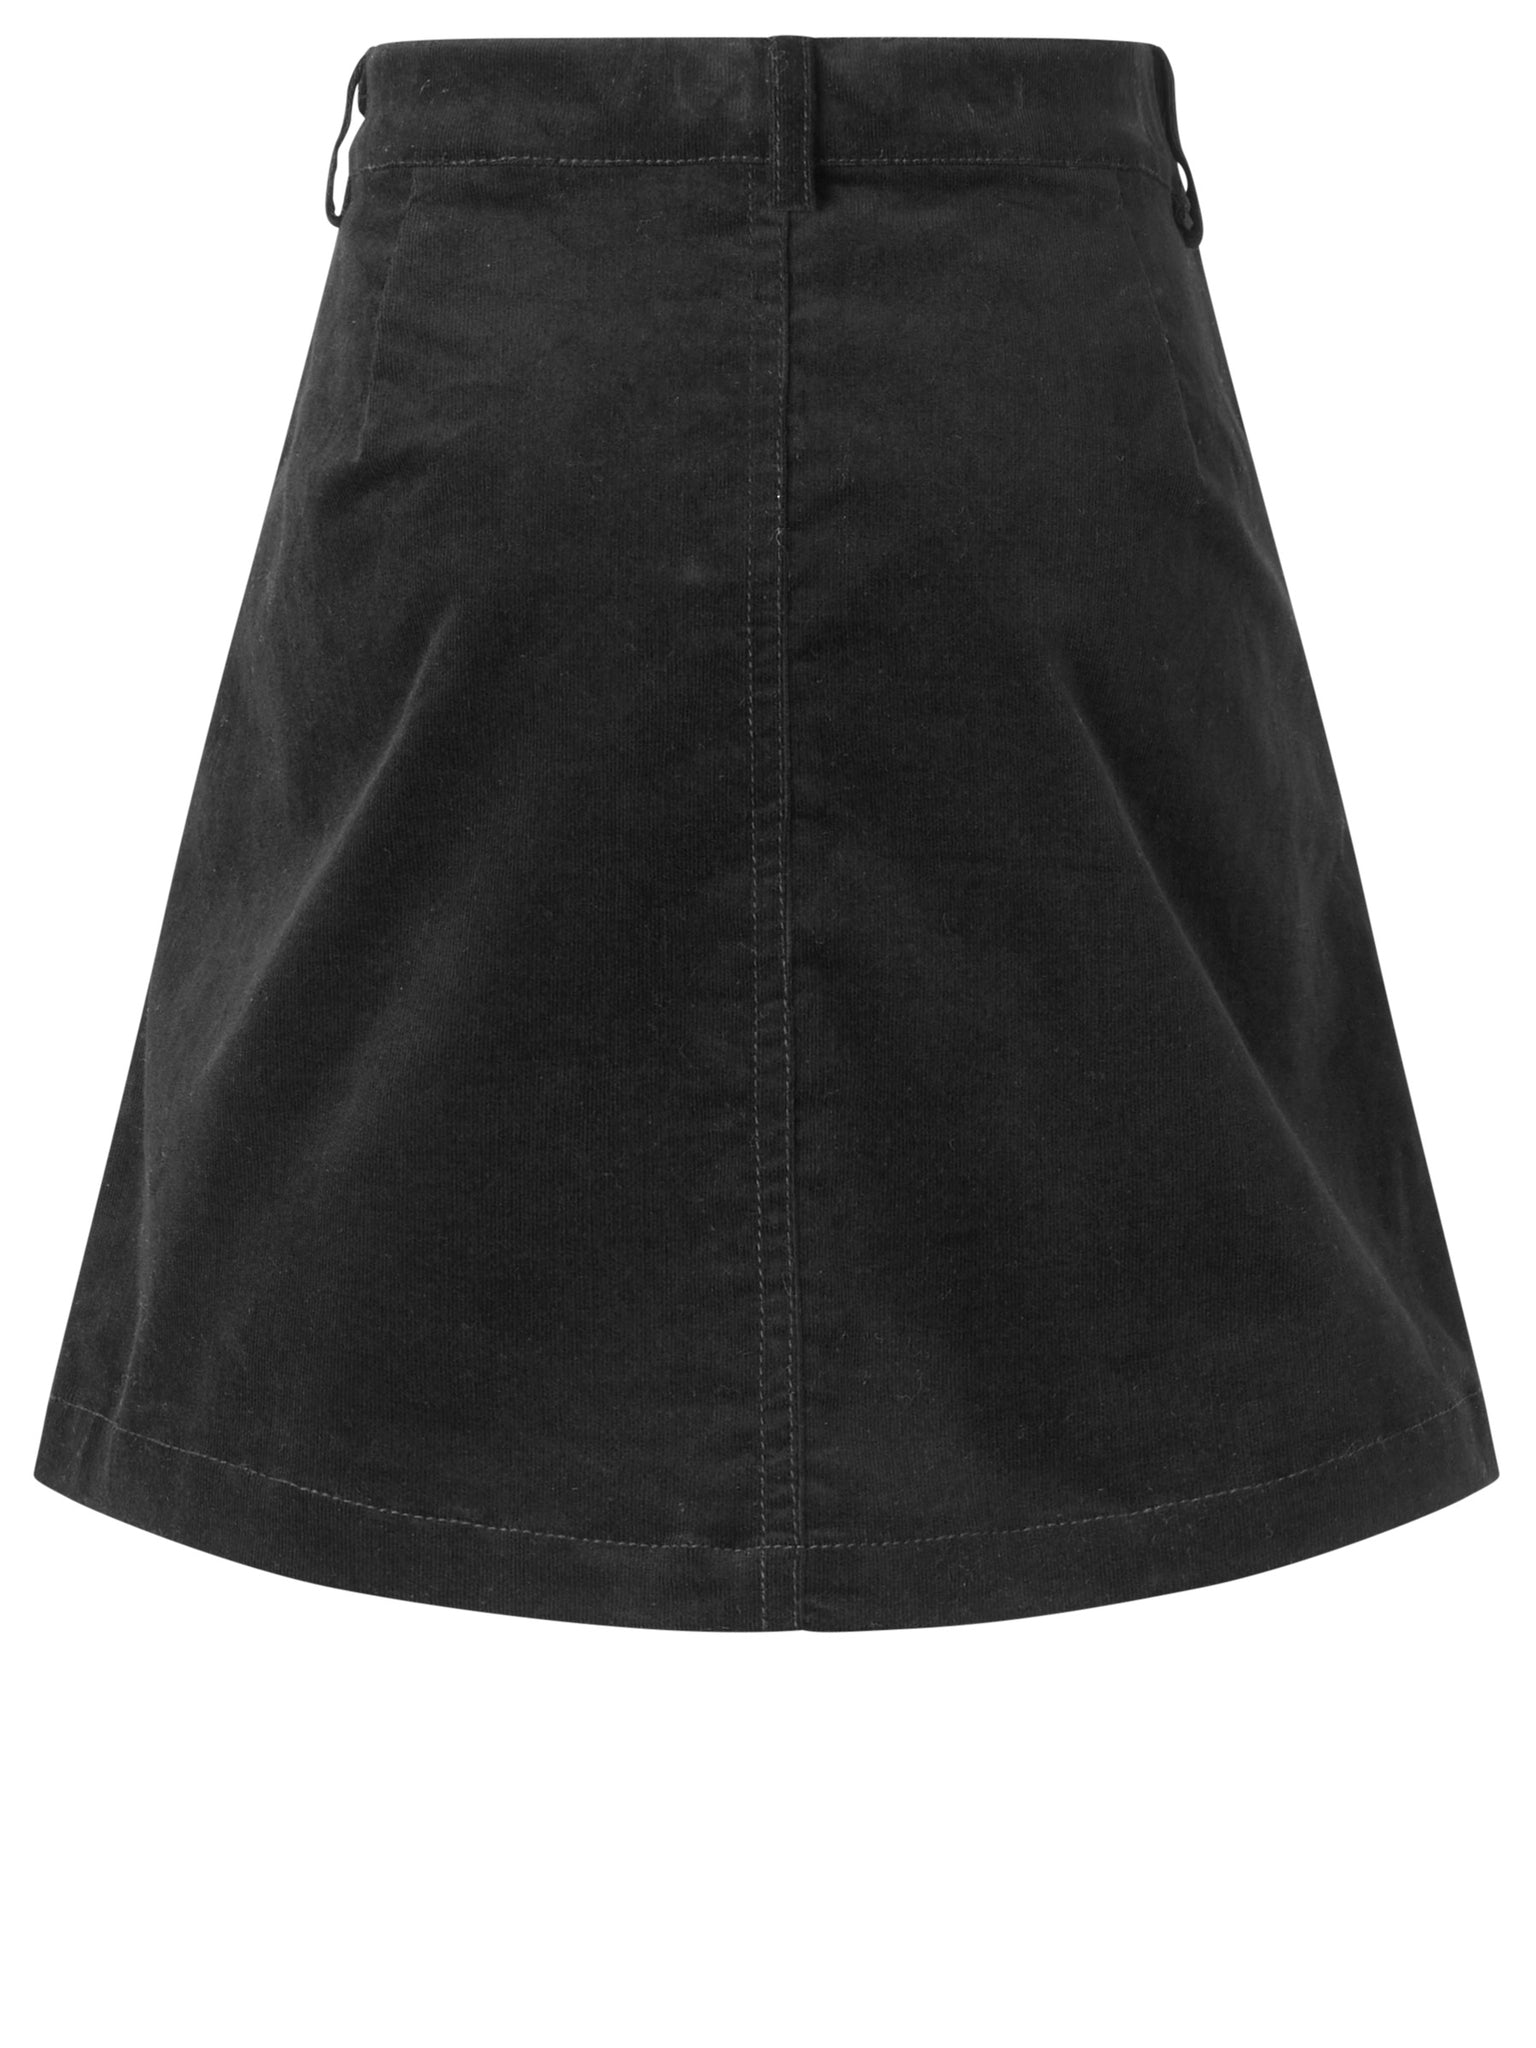 Skirt for girls